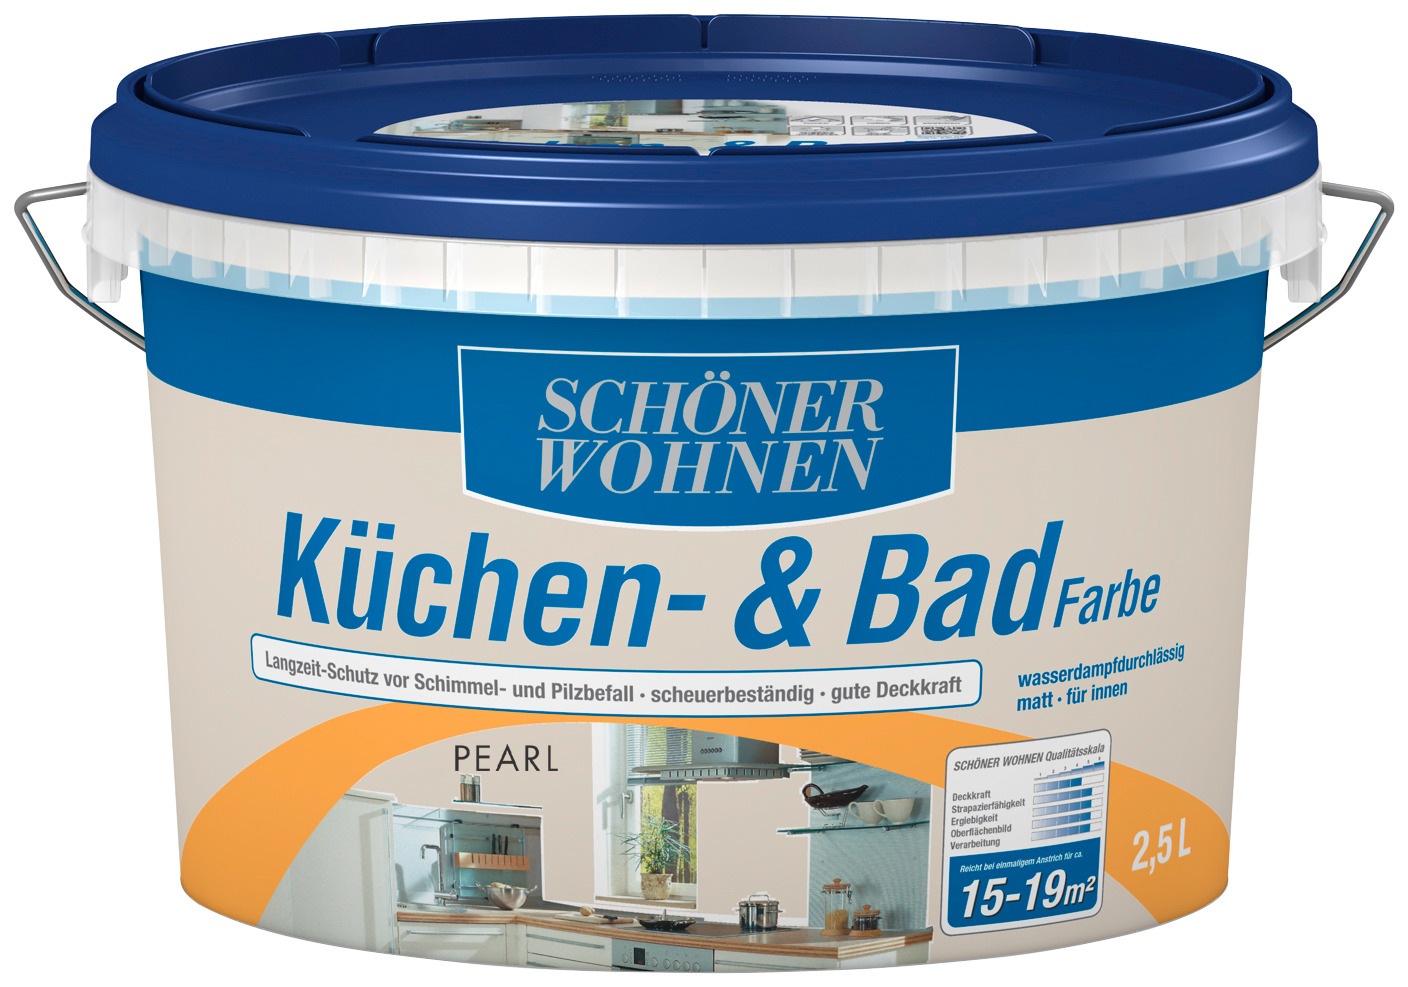 SCHÖNER WOHNEN FARBE Wandfarbe »Küchen- & Badfarbe«, 2,5 Liter, pearl, Langzeitschutz vor Schimmel- und Pilzbefall